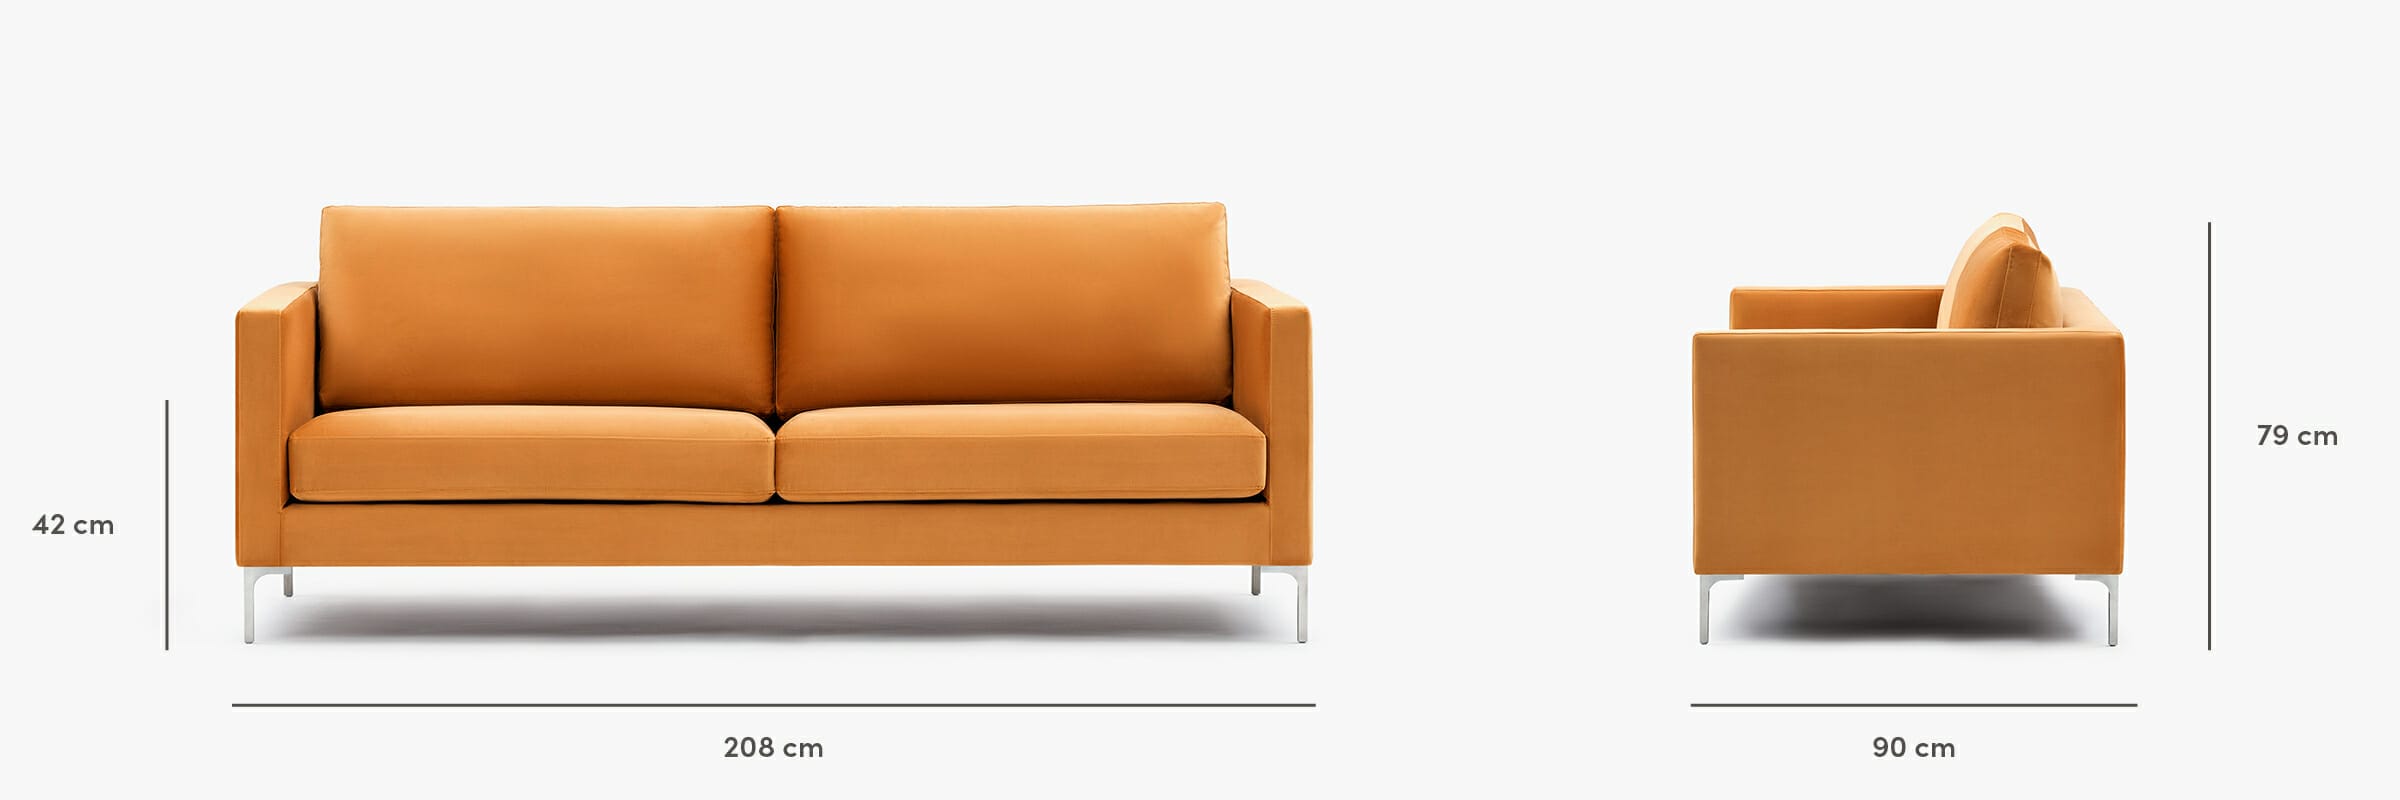 Monaco sofa dimensions